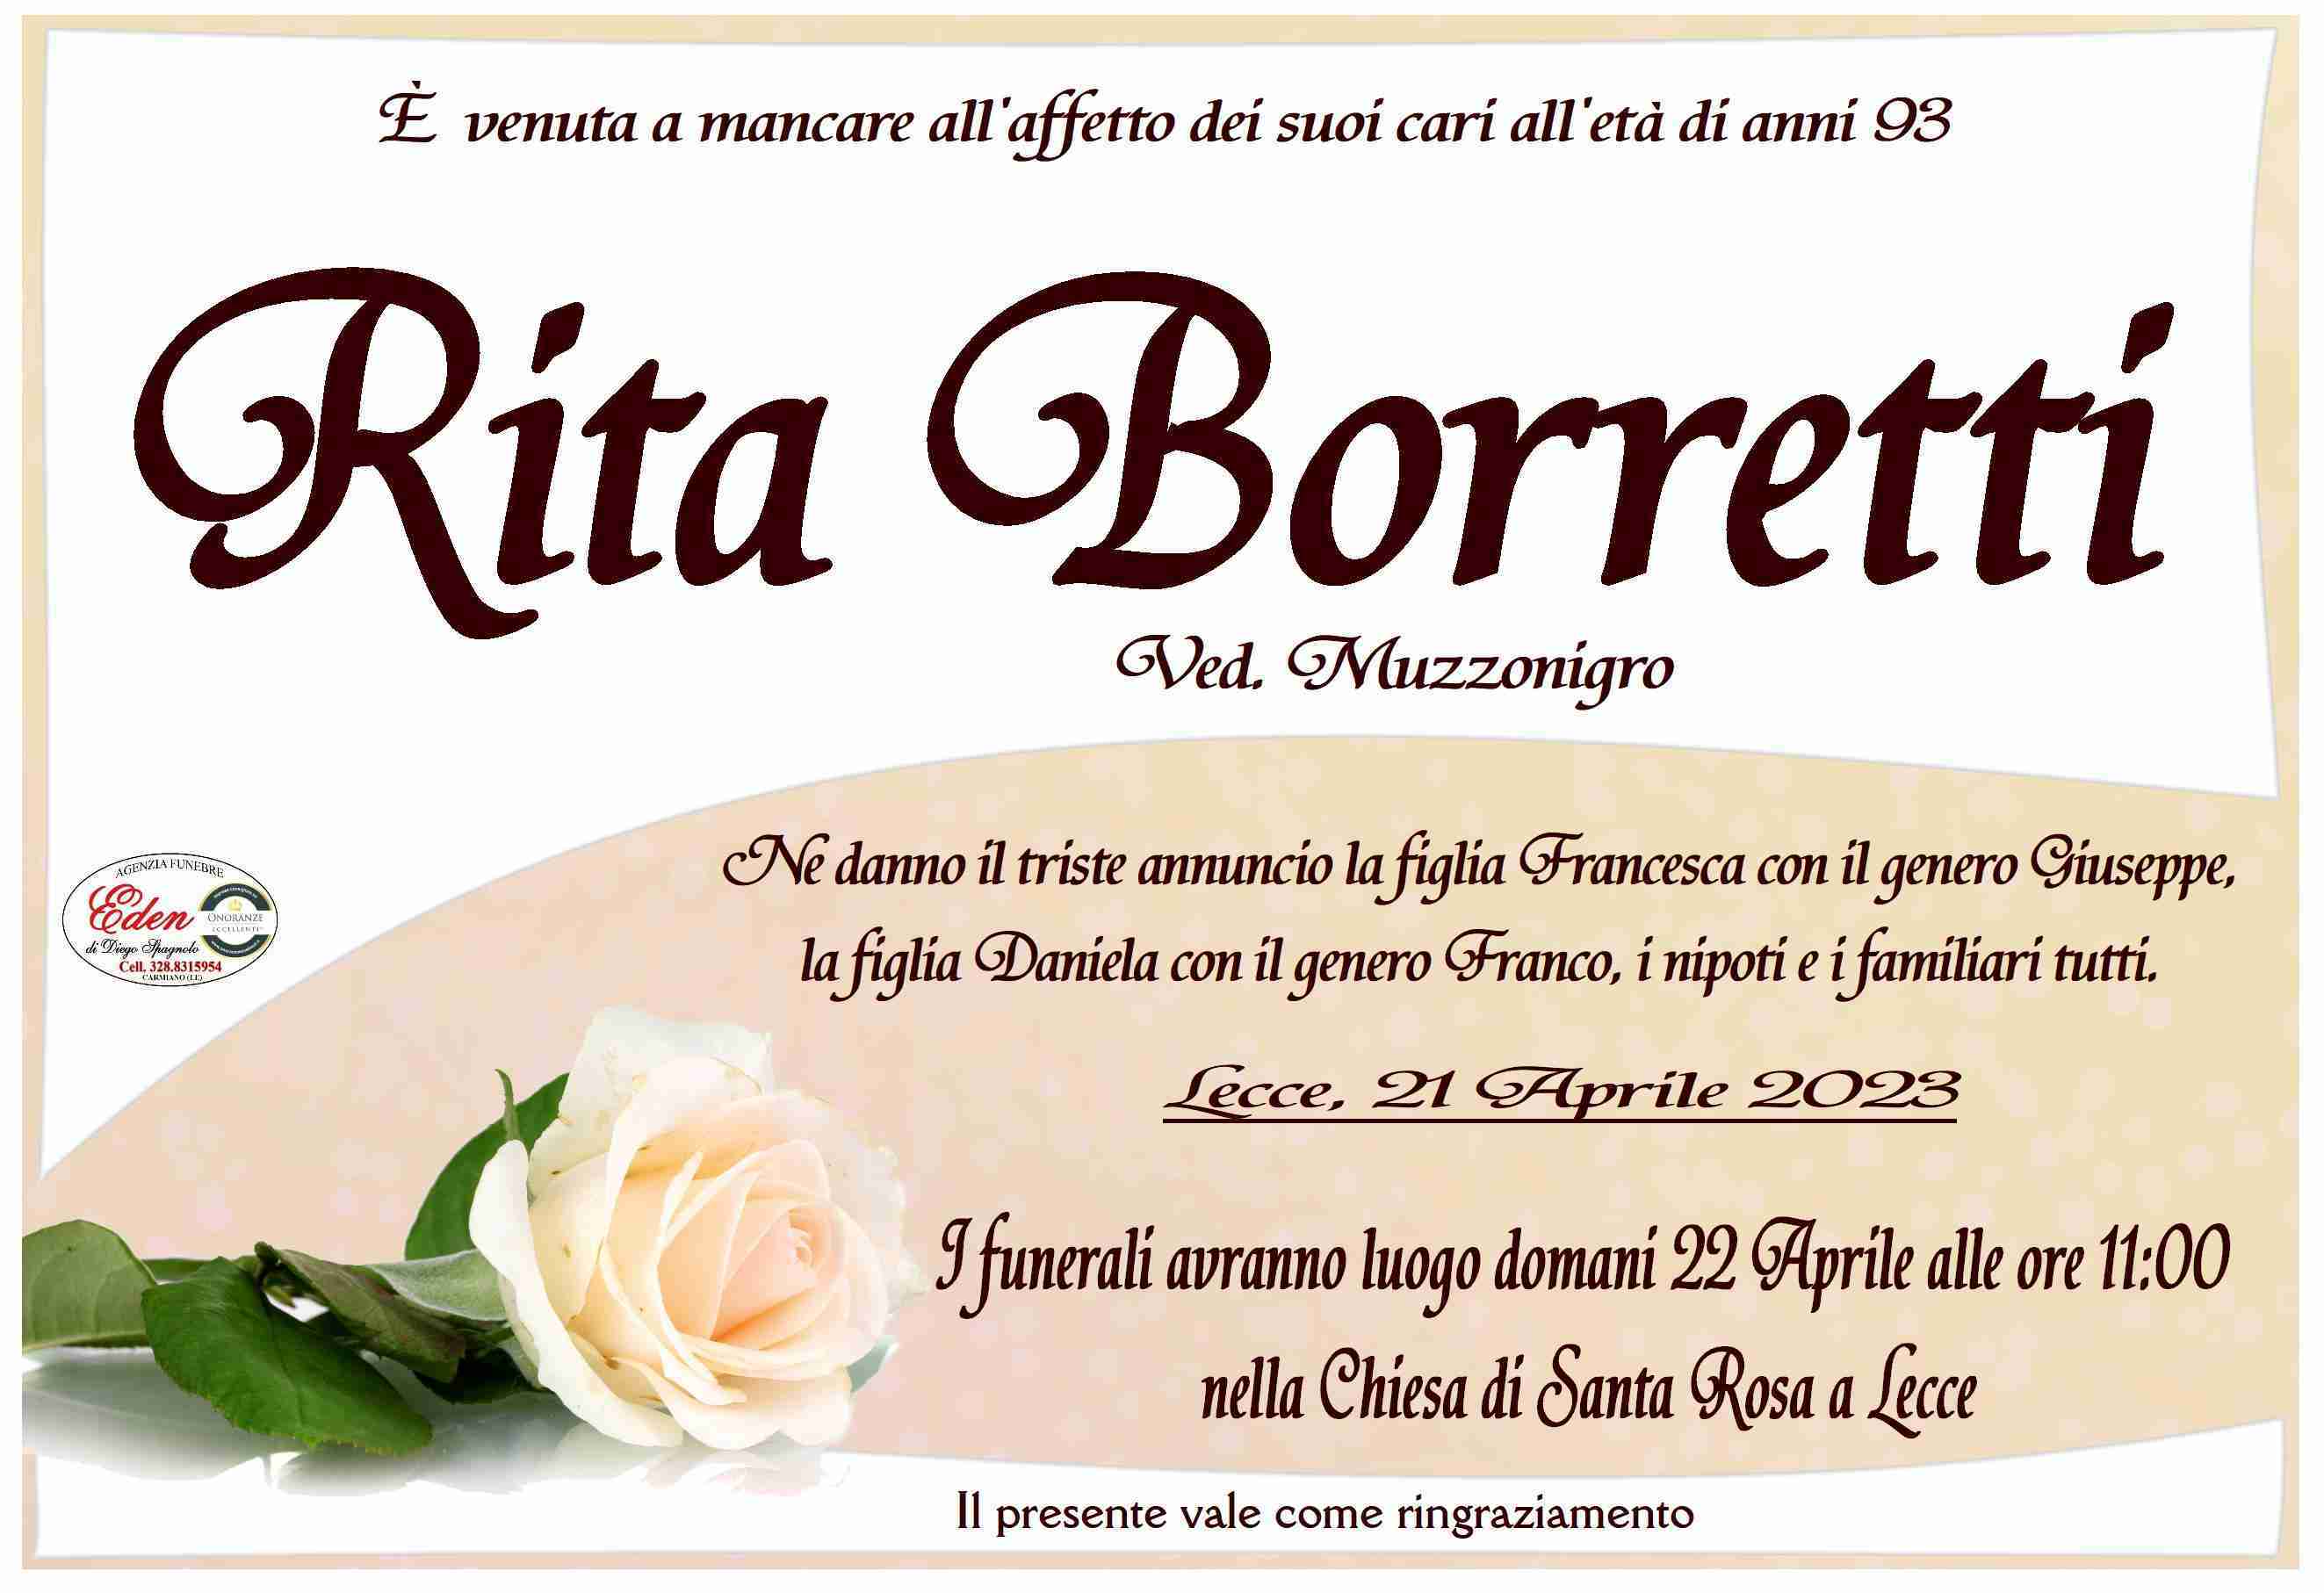 Borretti Rita